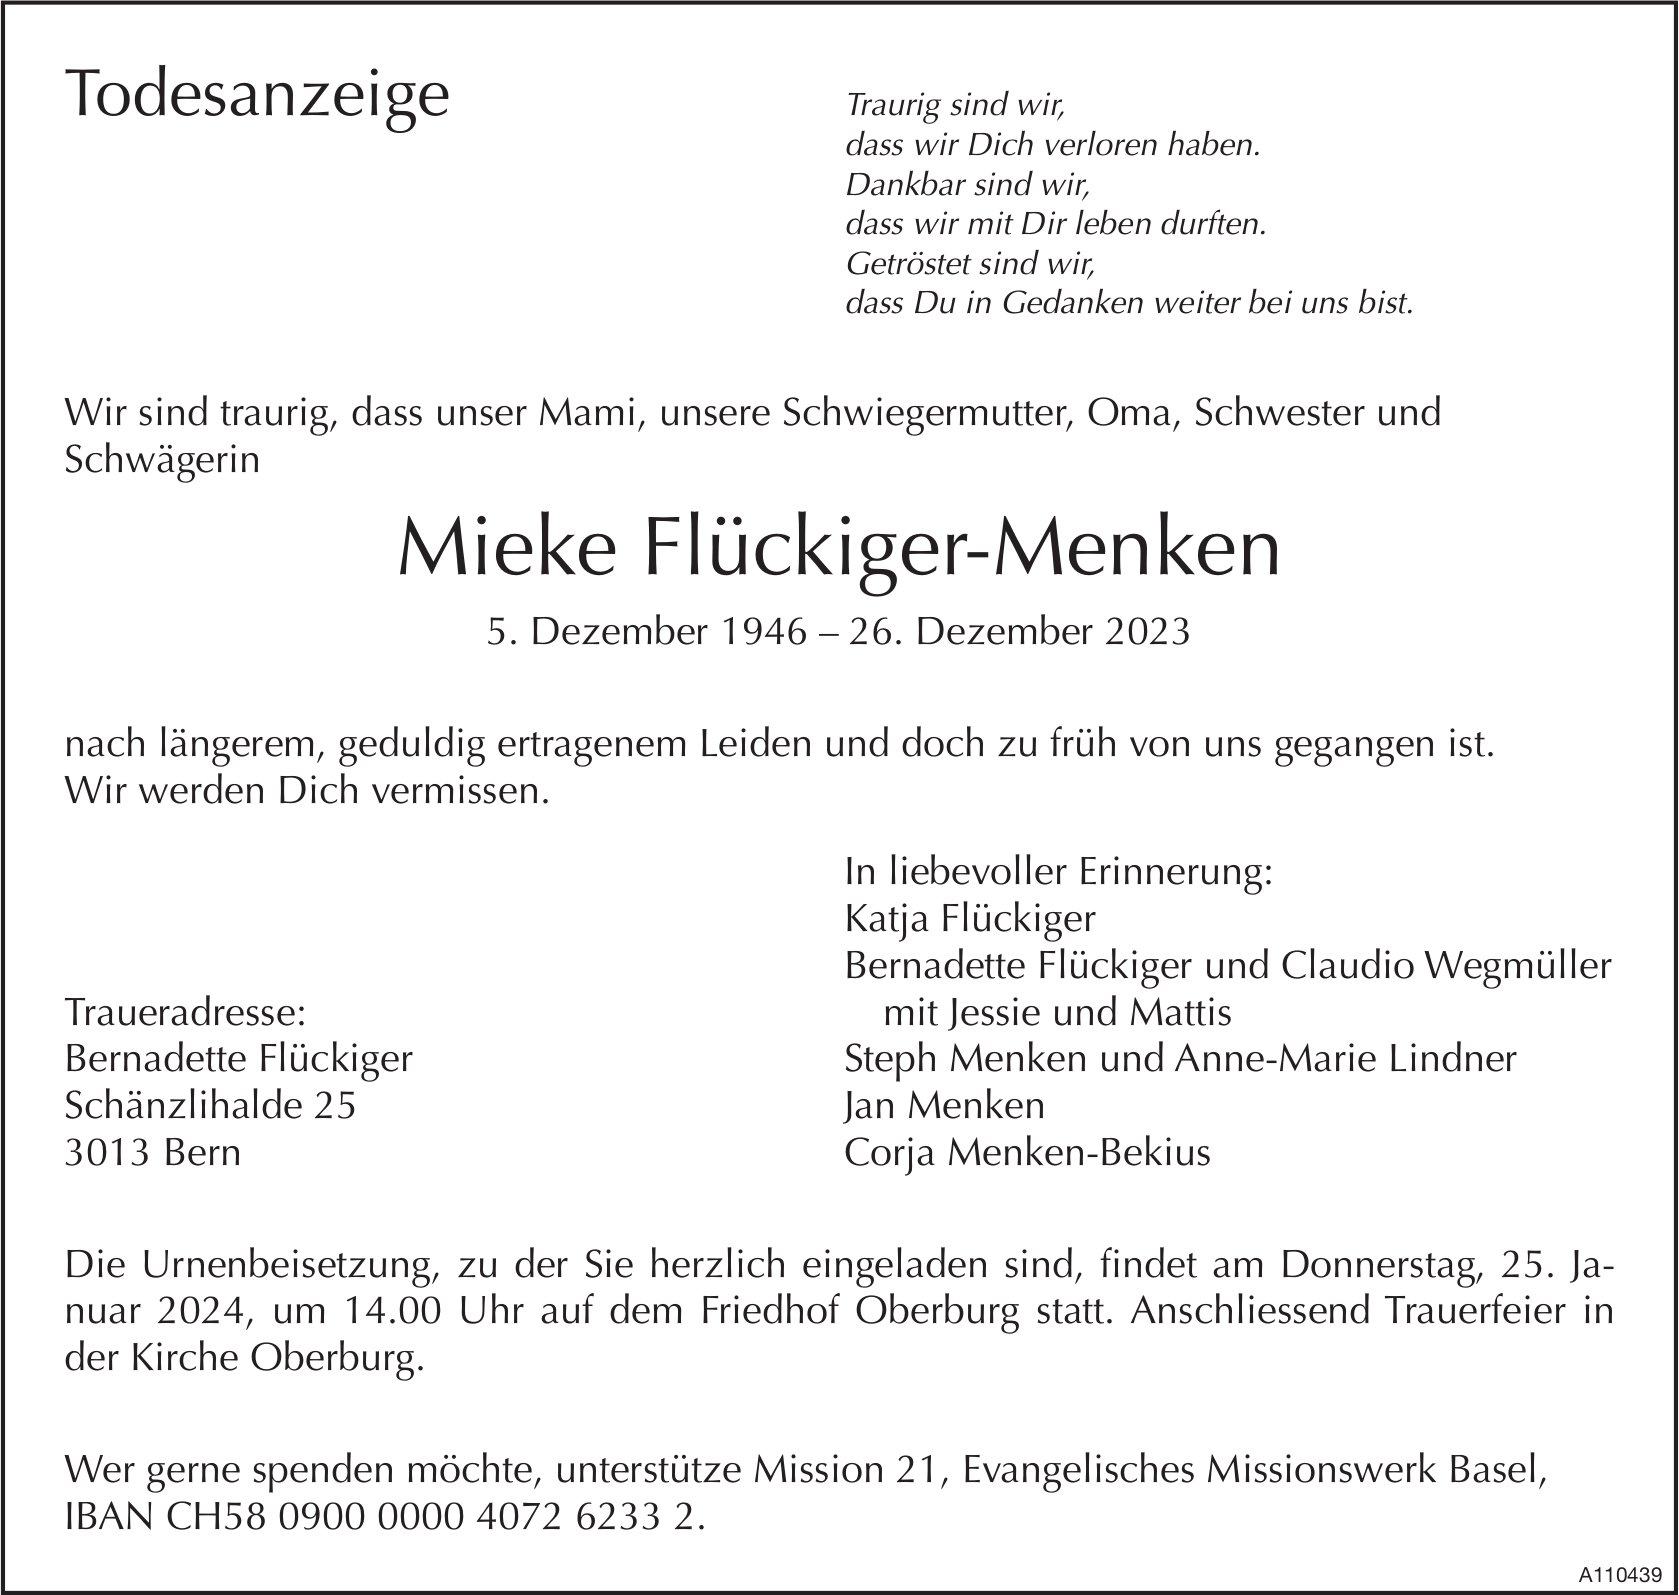 Mieke Flückiger-Menken, Dezember 2023 / TA